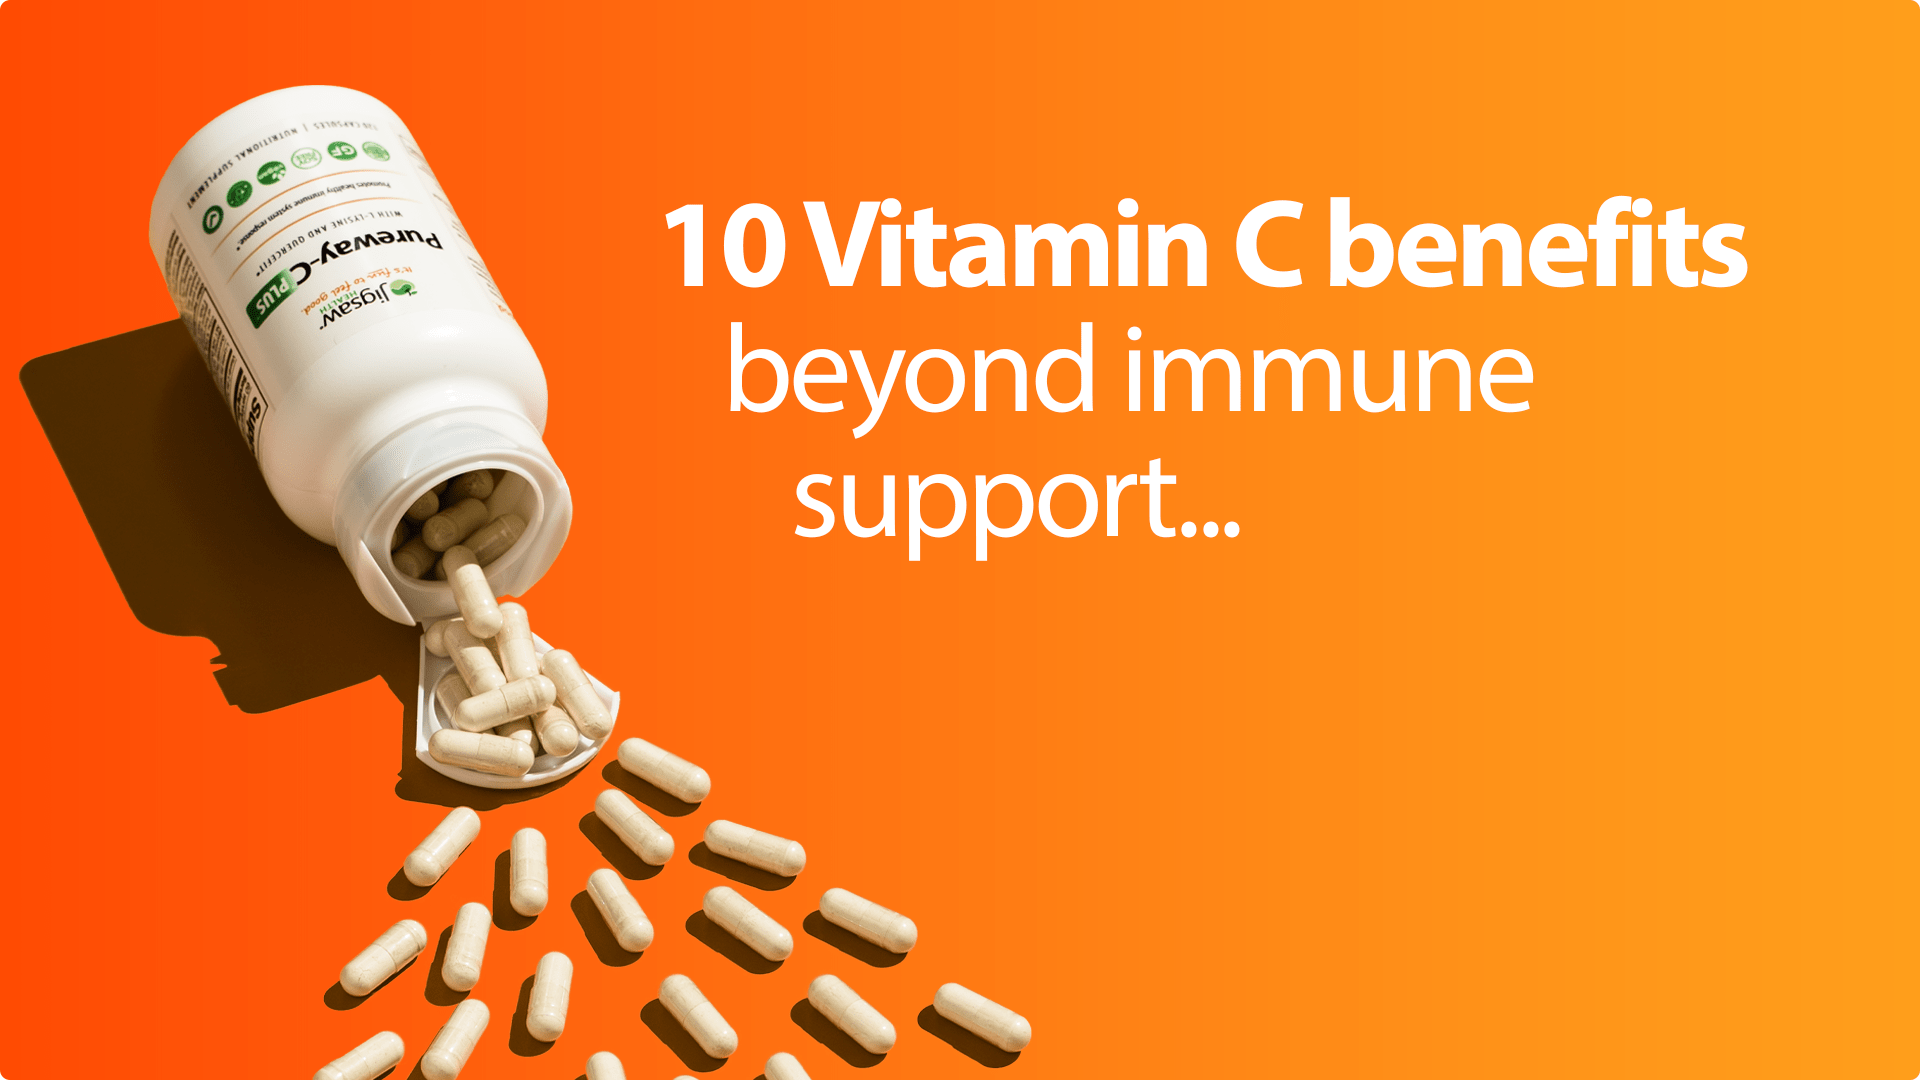 10 Vitamin C Benefits Beyond Immune Support...